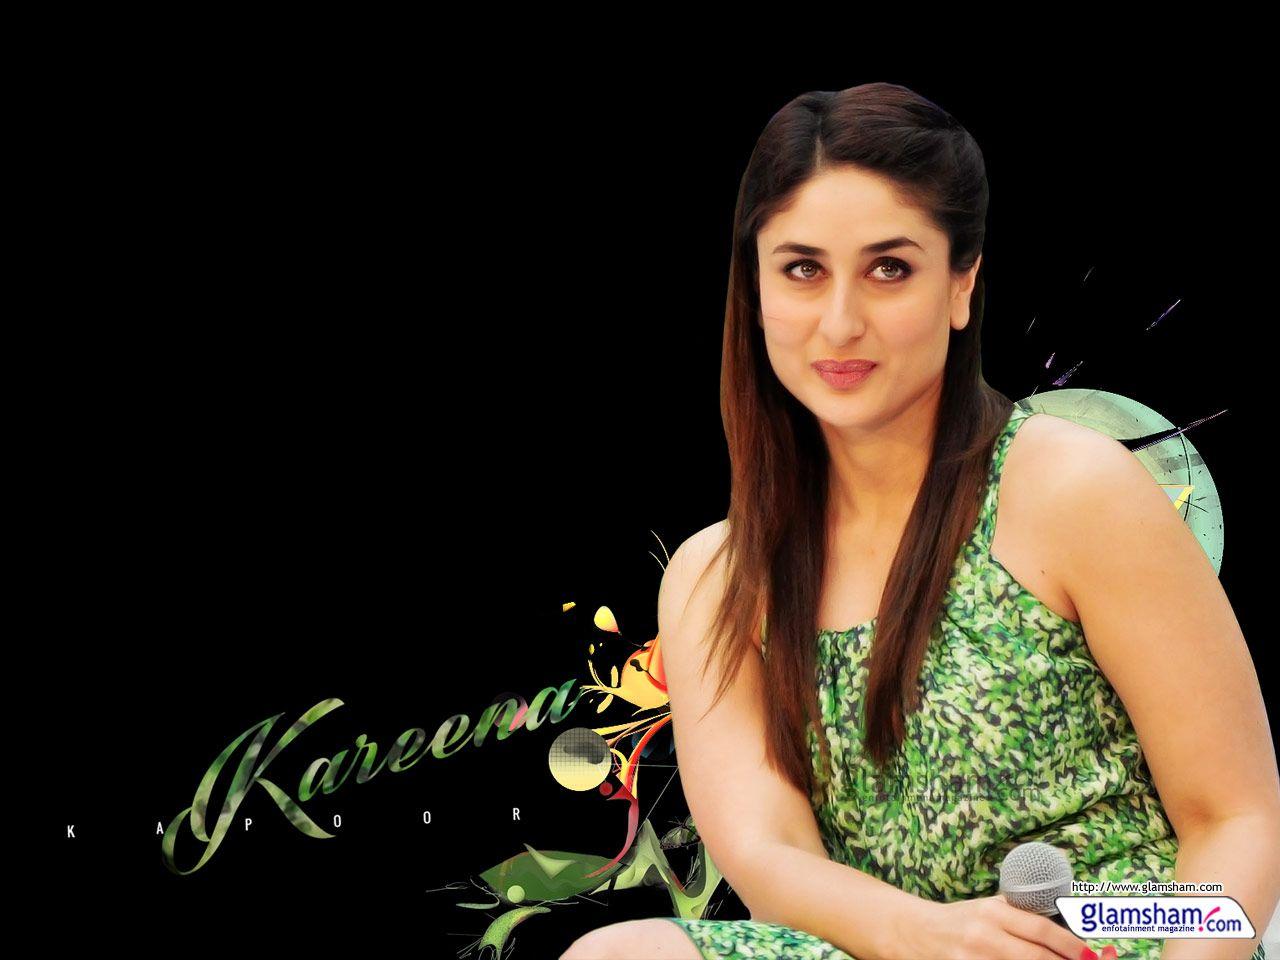 Wallpaper Of Kareena Kapoor 1024×768 Kareena Kapoor Wallpaper 65